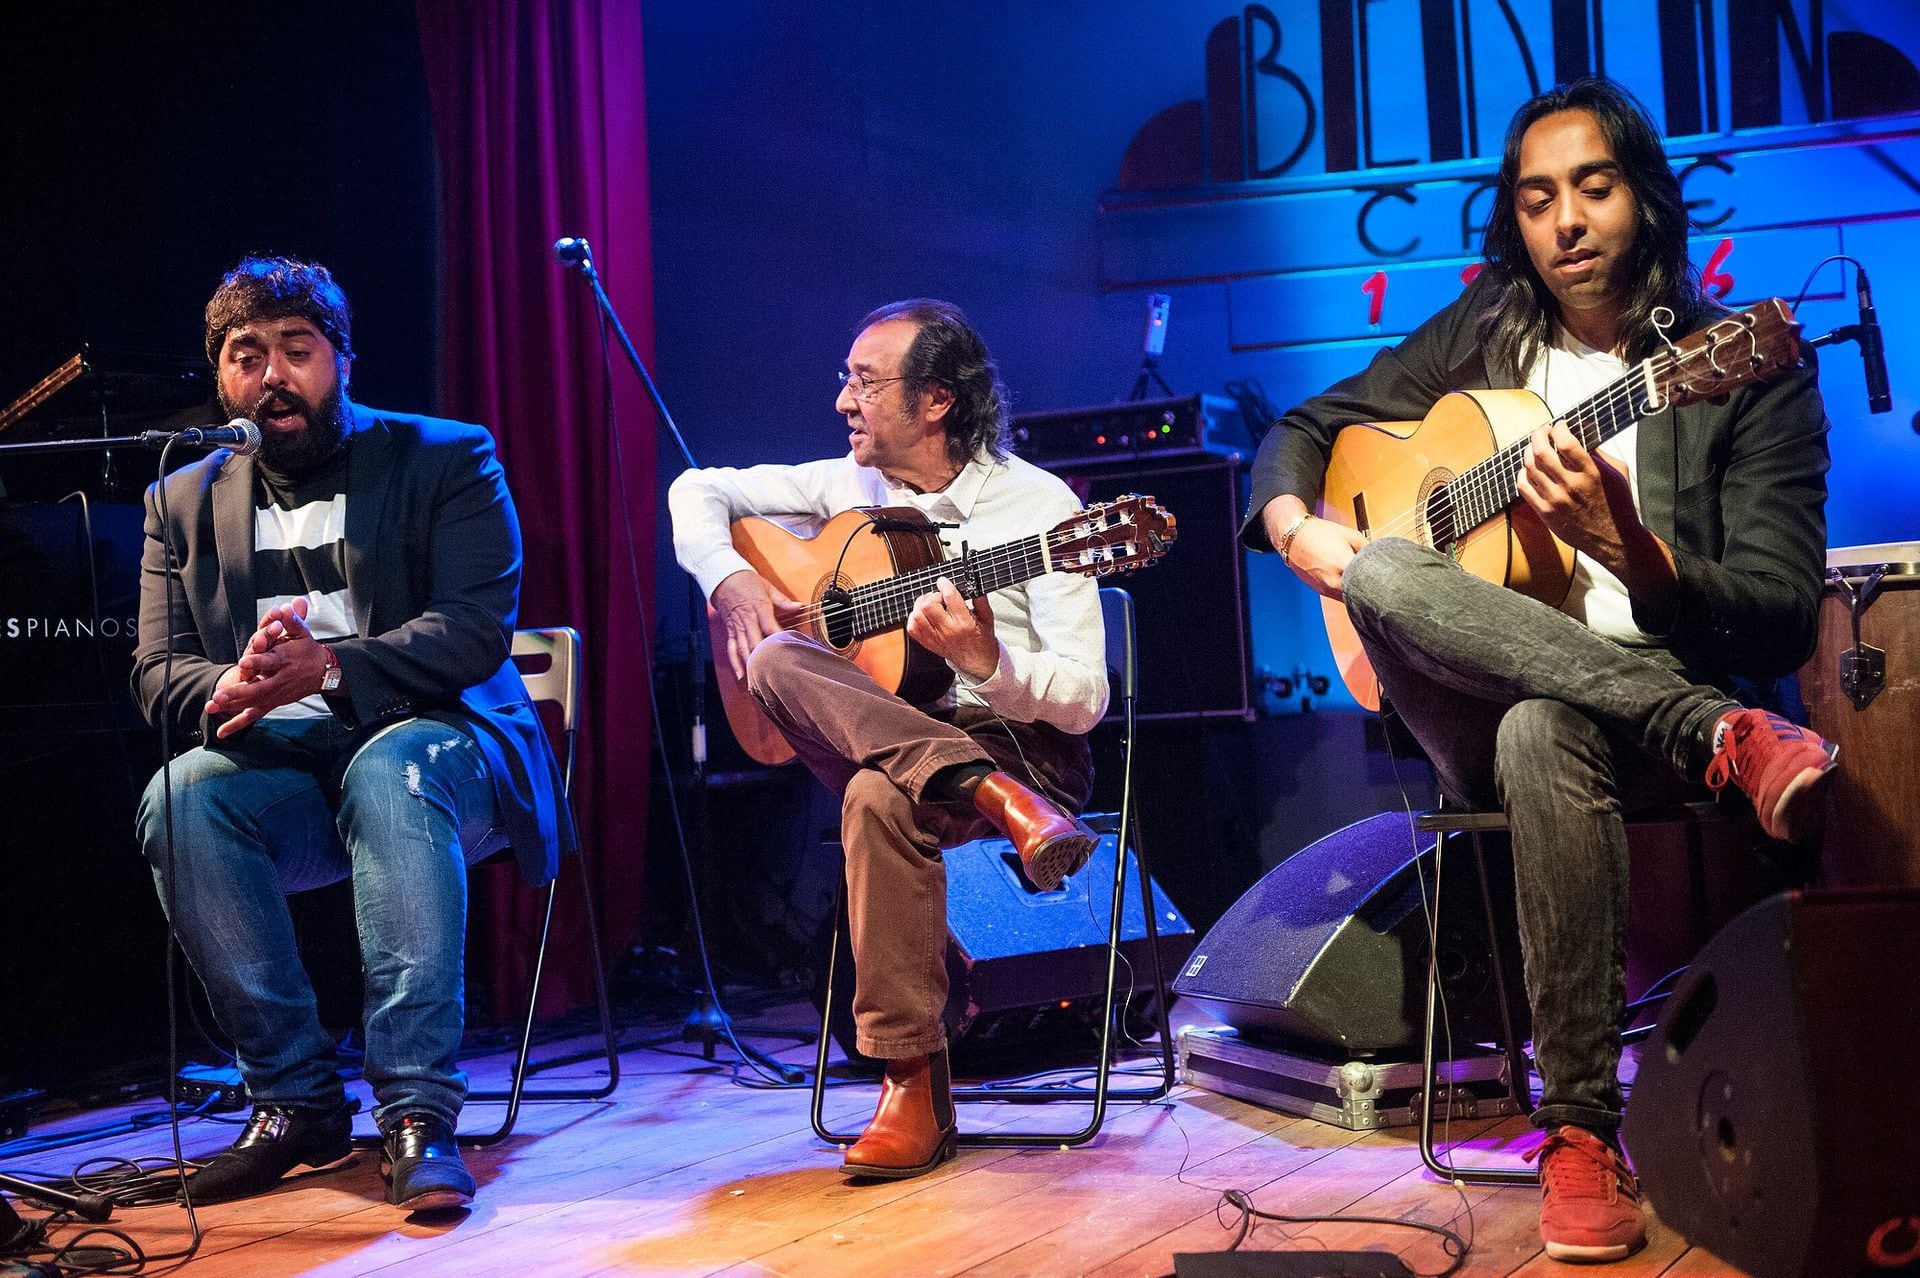 David de la Jacoba, Pepe Habichuela (el veterano guitarrista flamenco) y Carlos de la Jacoba, en una de las actuaciones en el Café Berlín de Madrid